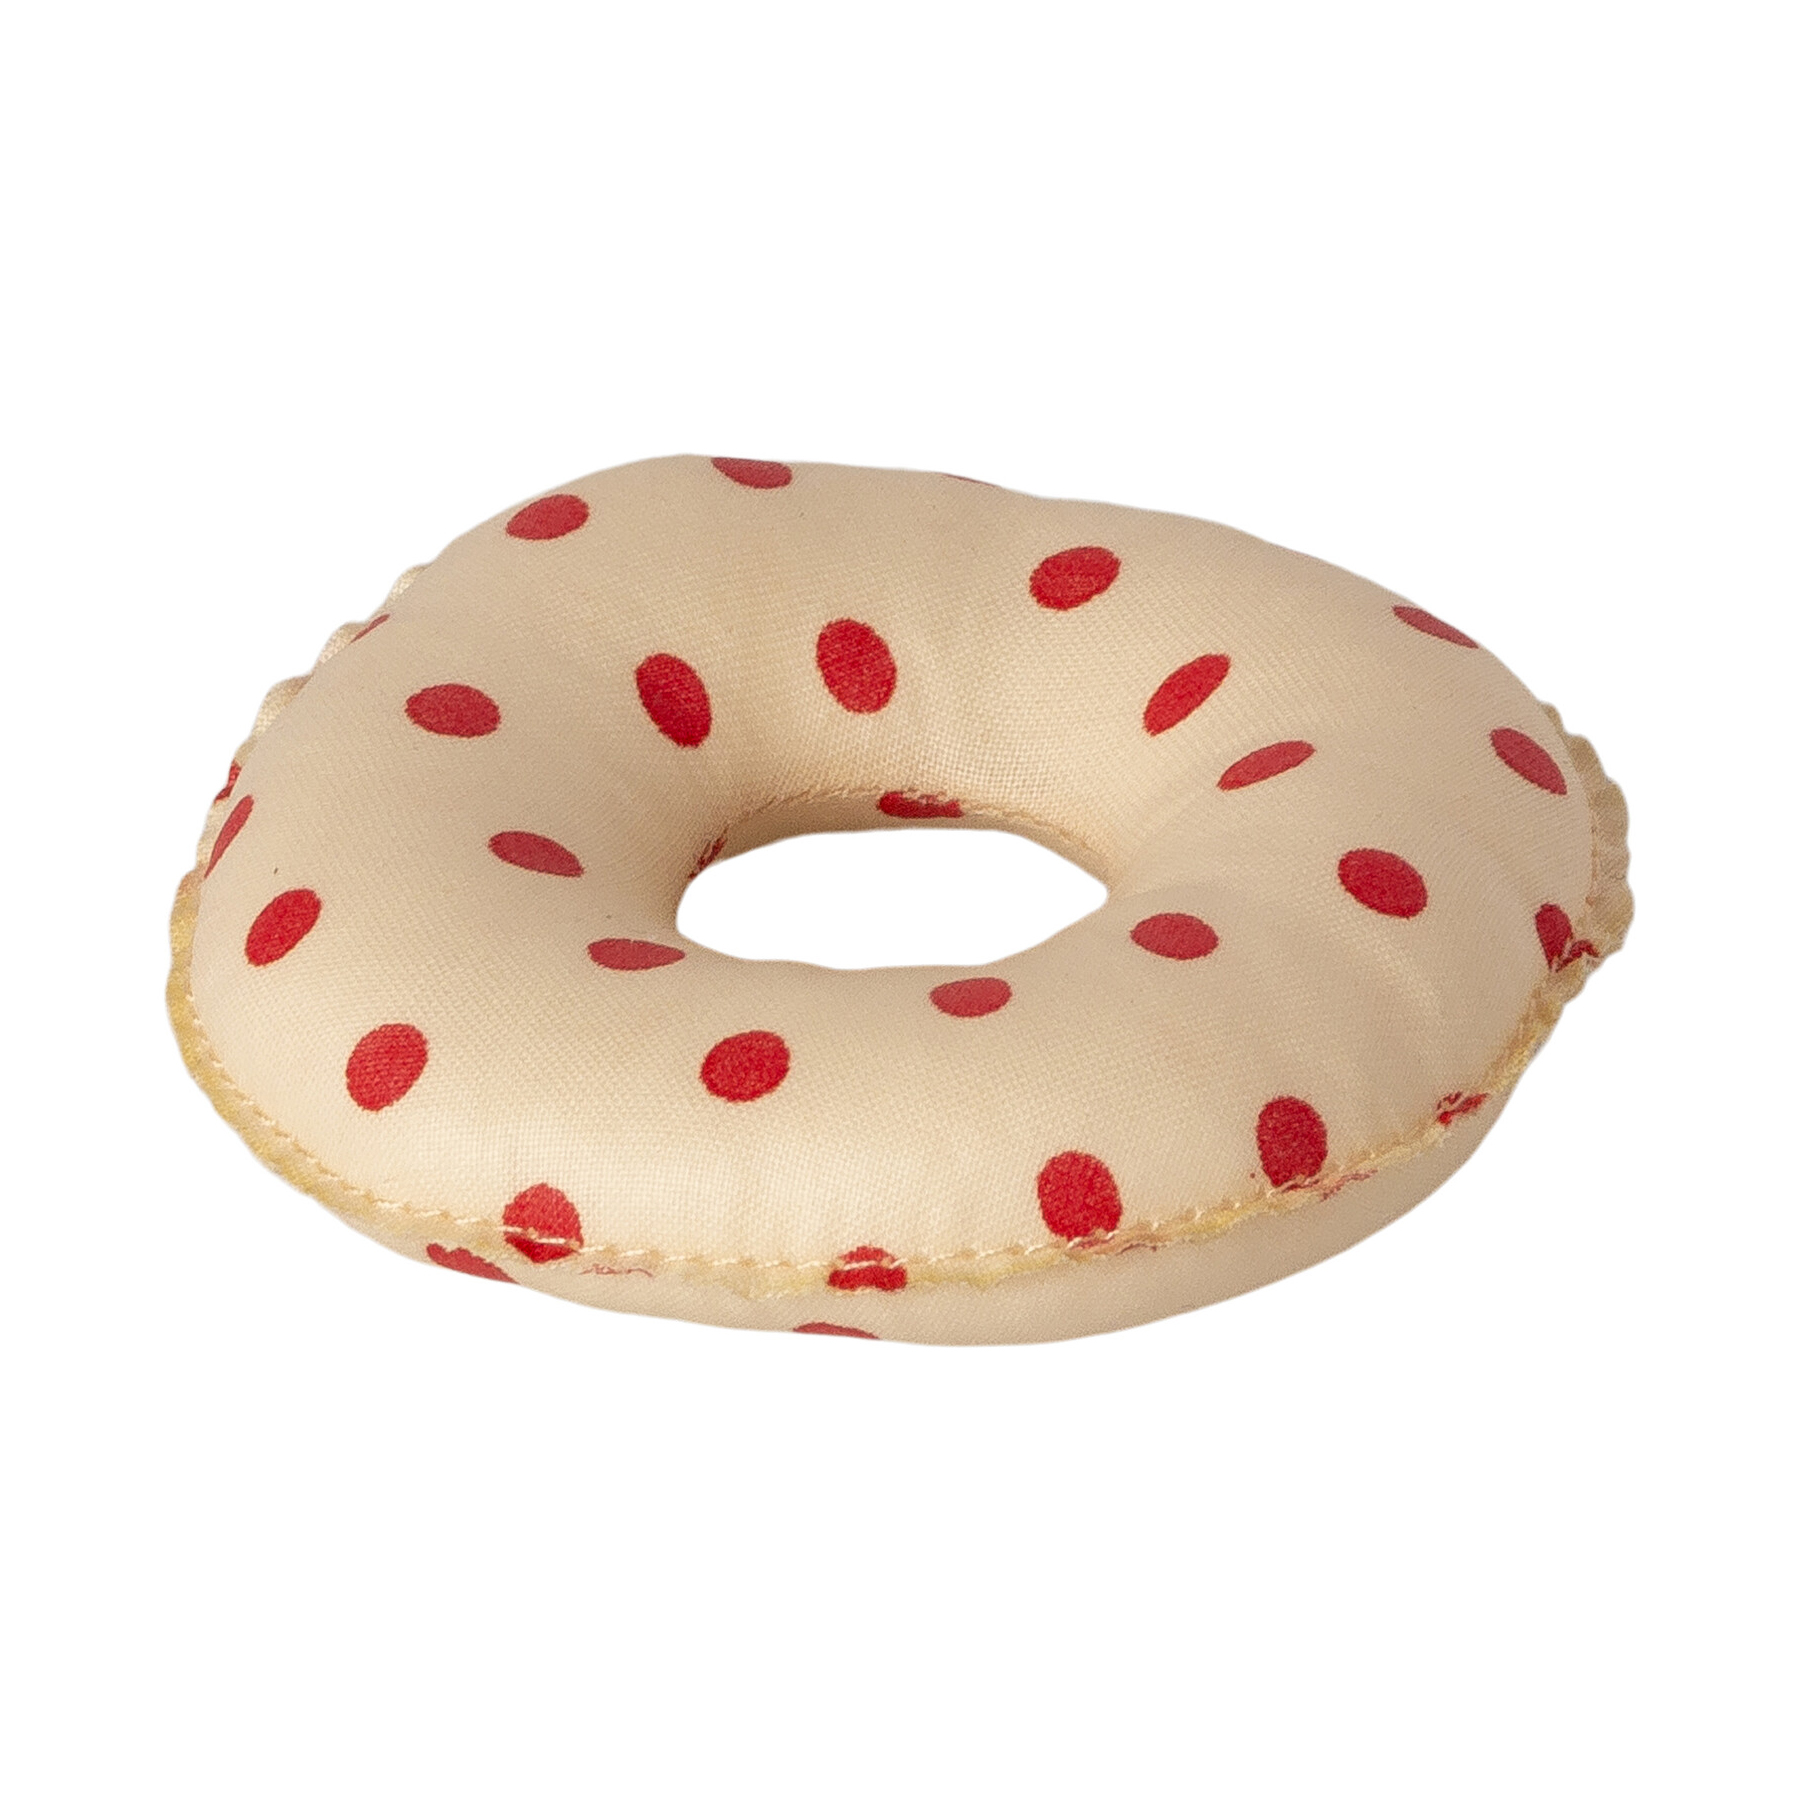 Надувной круг для мышей младшего брата и младшей сестры, в красный горошек, '21 форма для запекания 14 х 13 см corningware красный